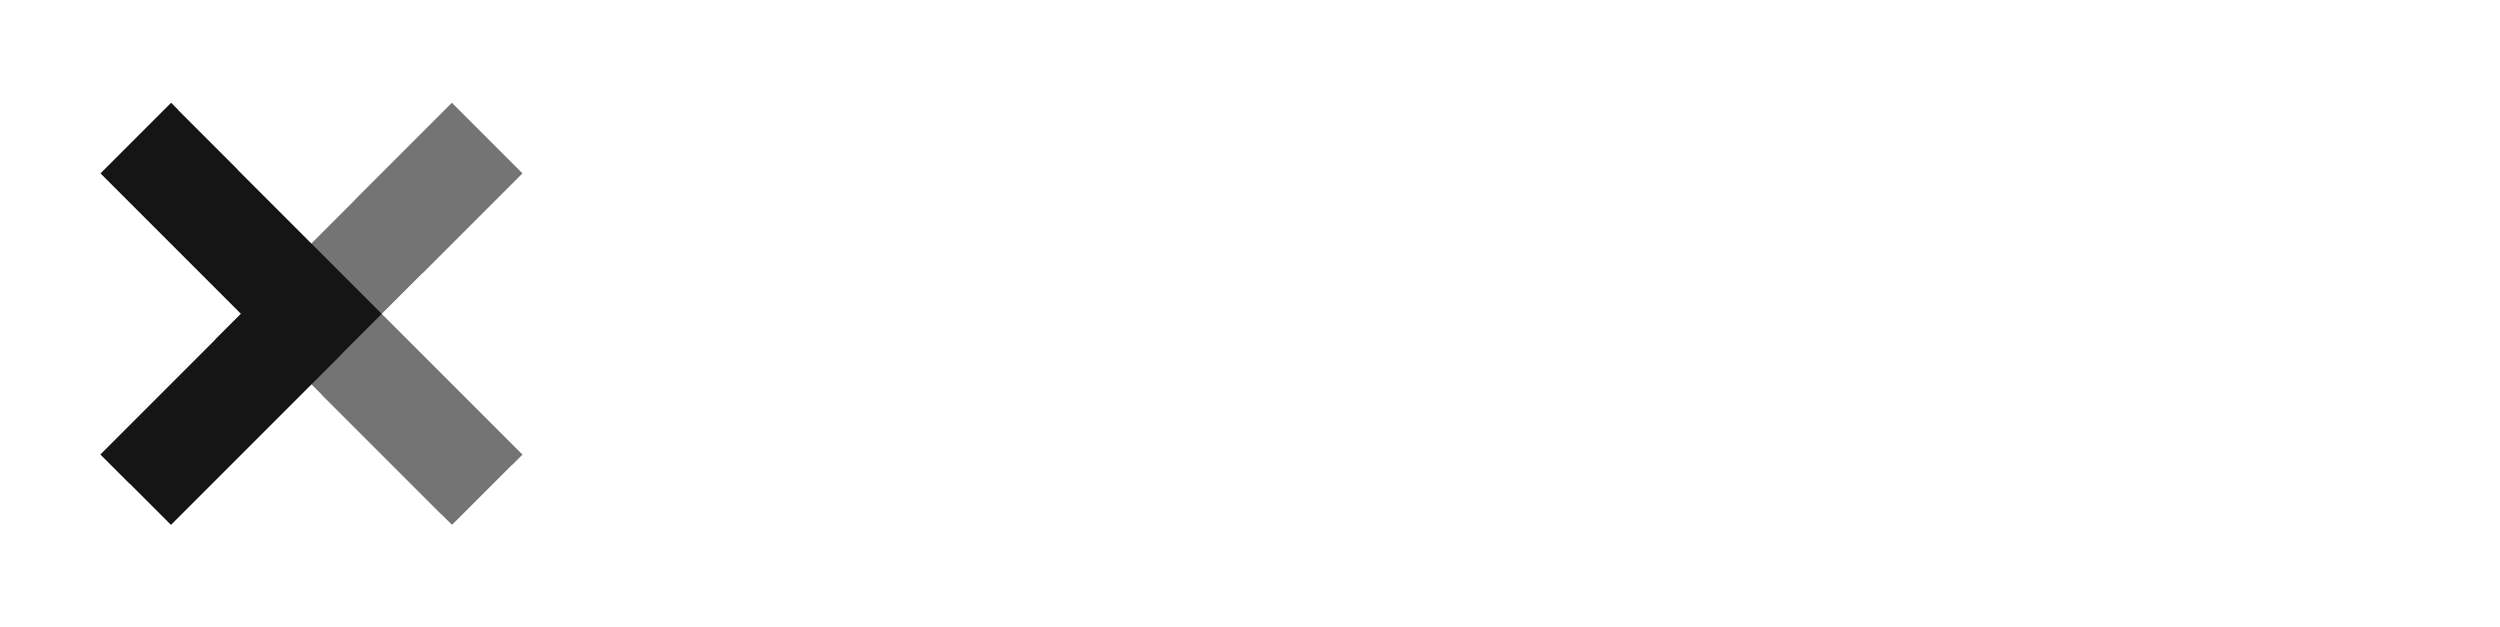 XPRIZE-Logo-Inline-White